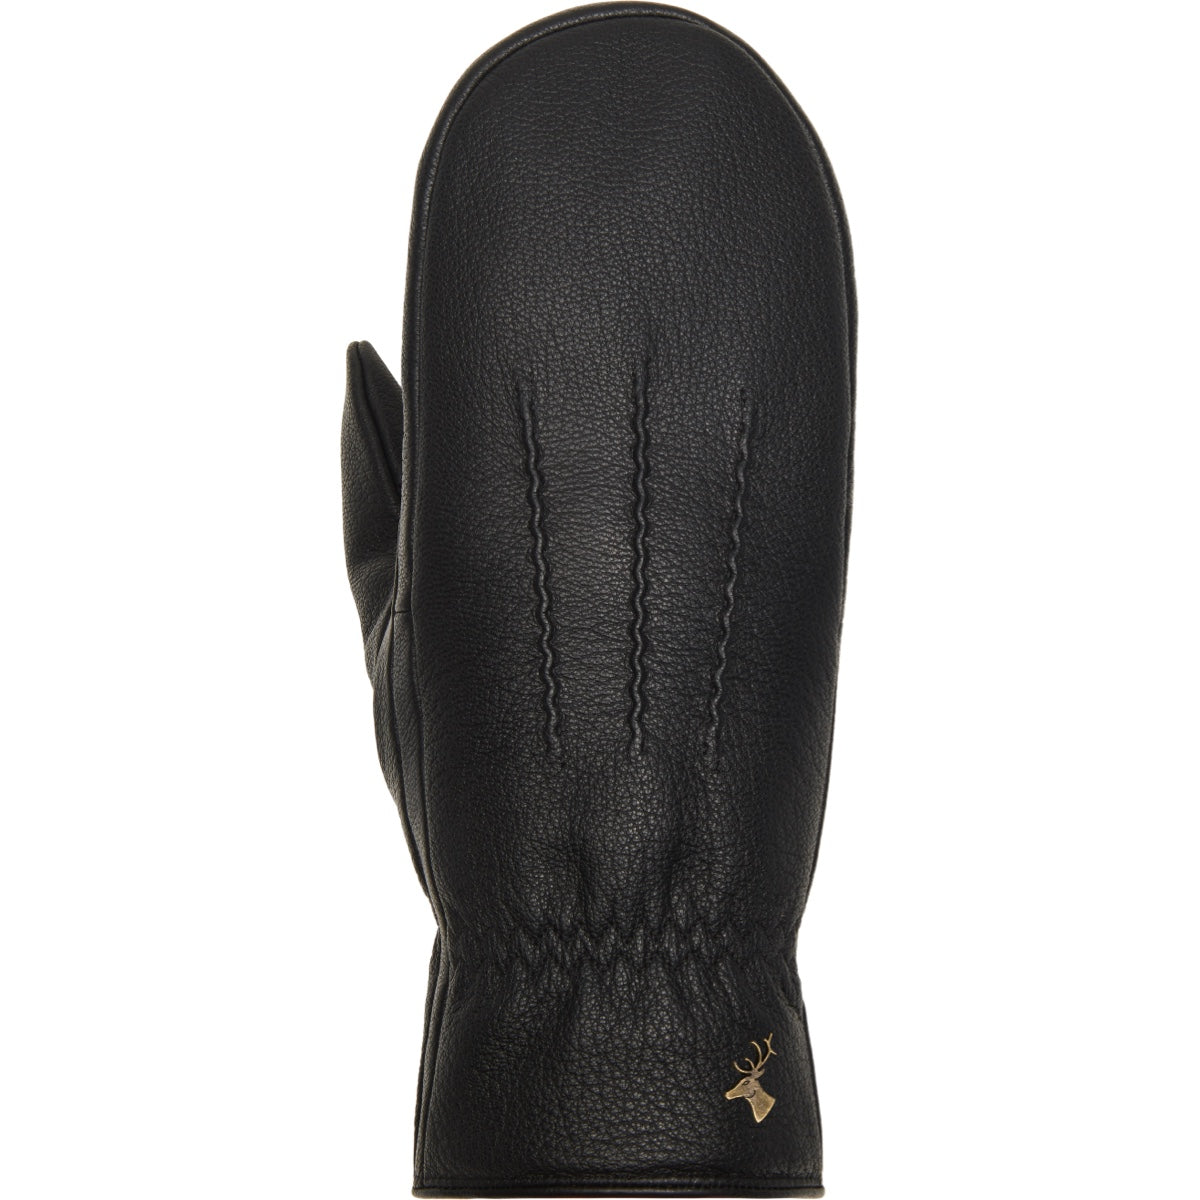 Leather Mittens Women Black Eva - Schwartz & von Halen® - Premium Leather Gloves - 1